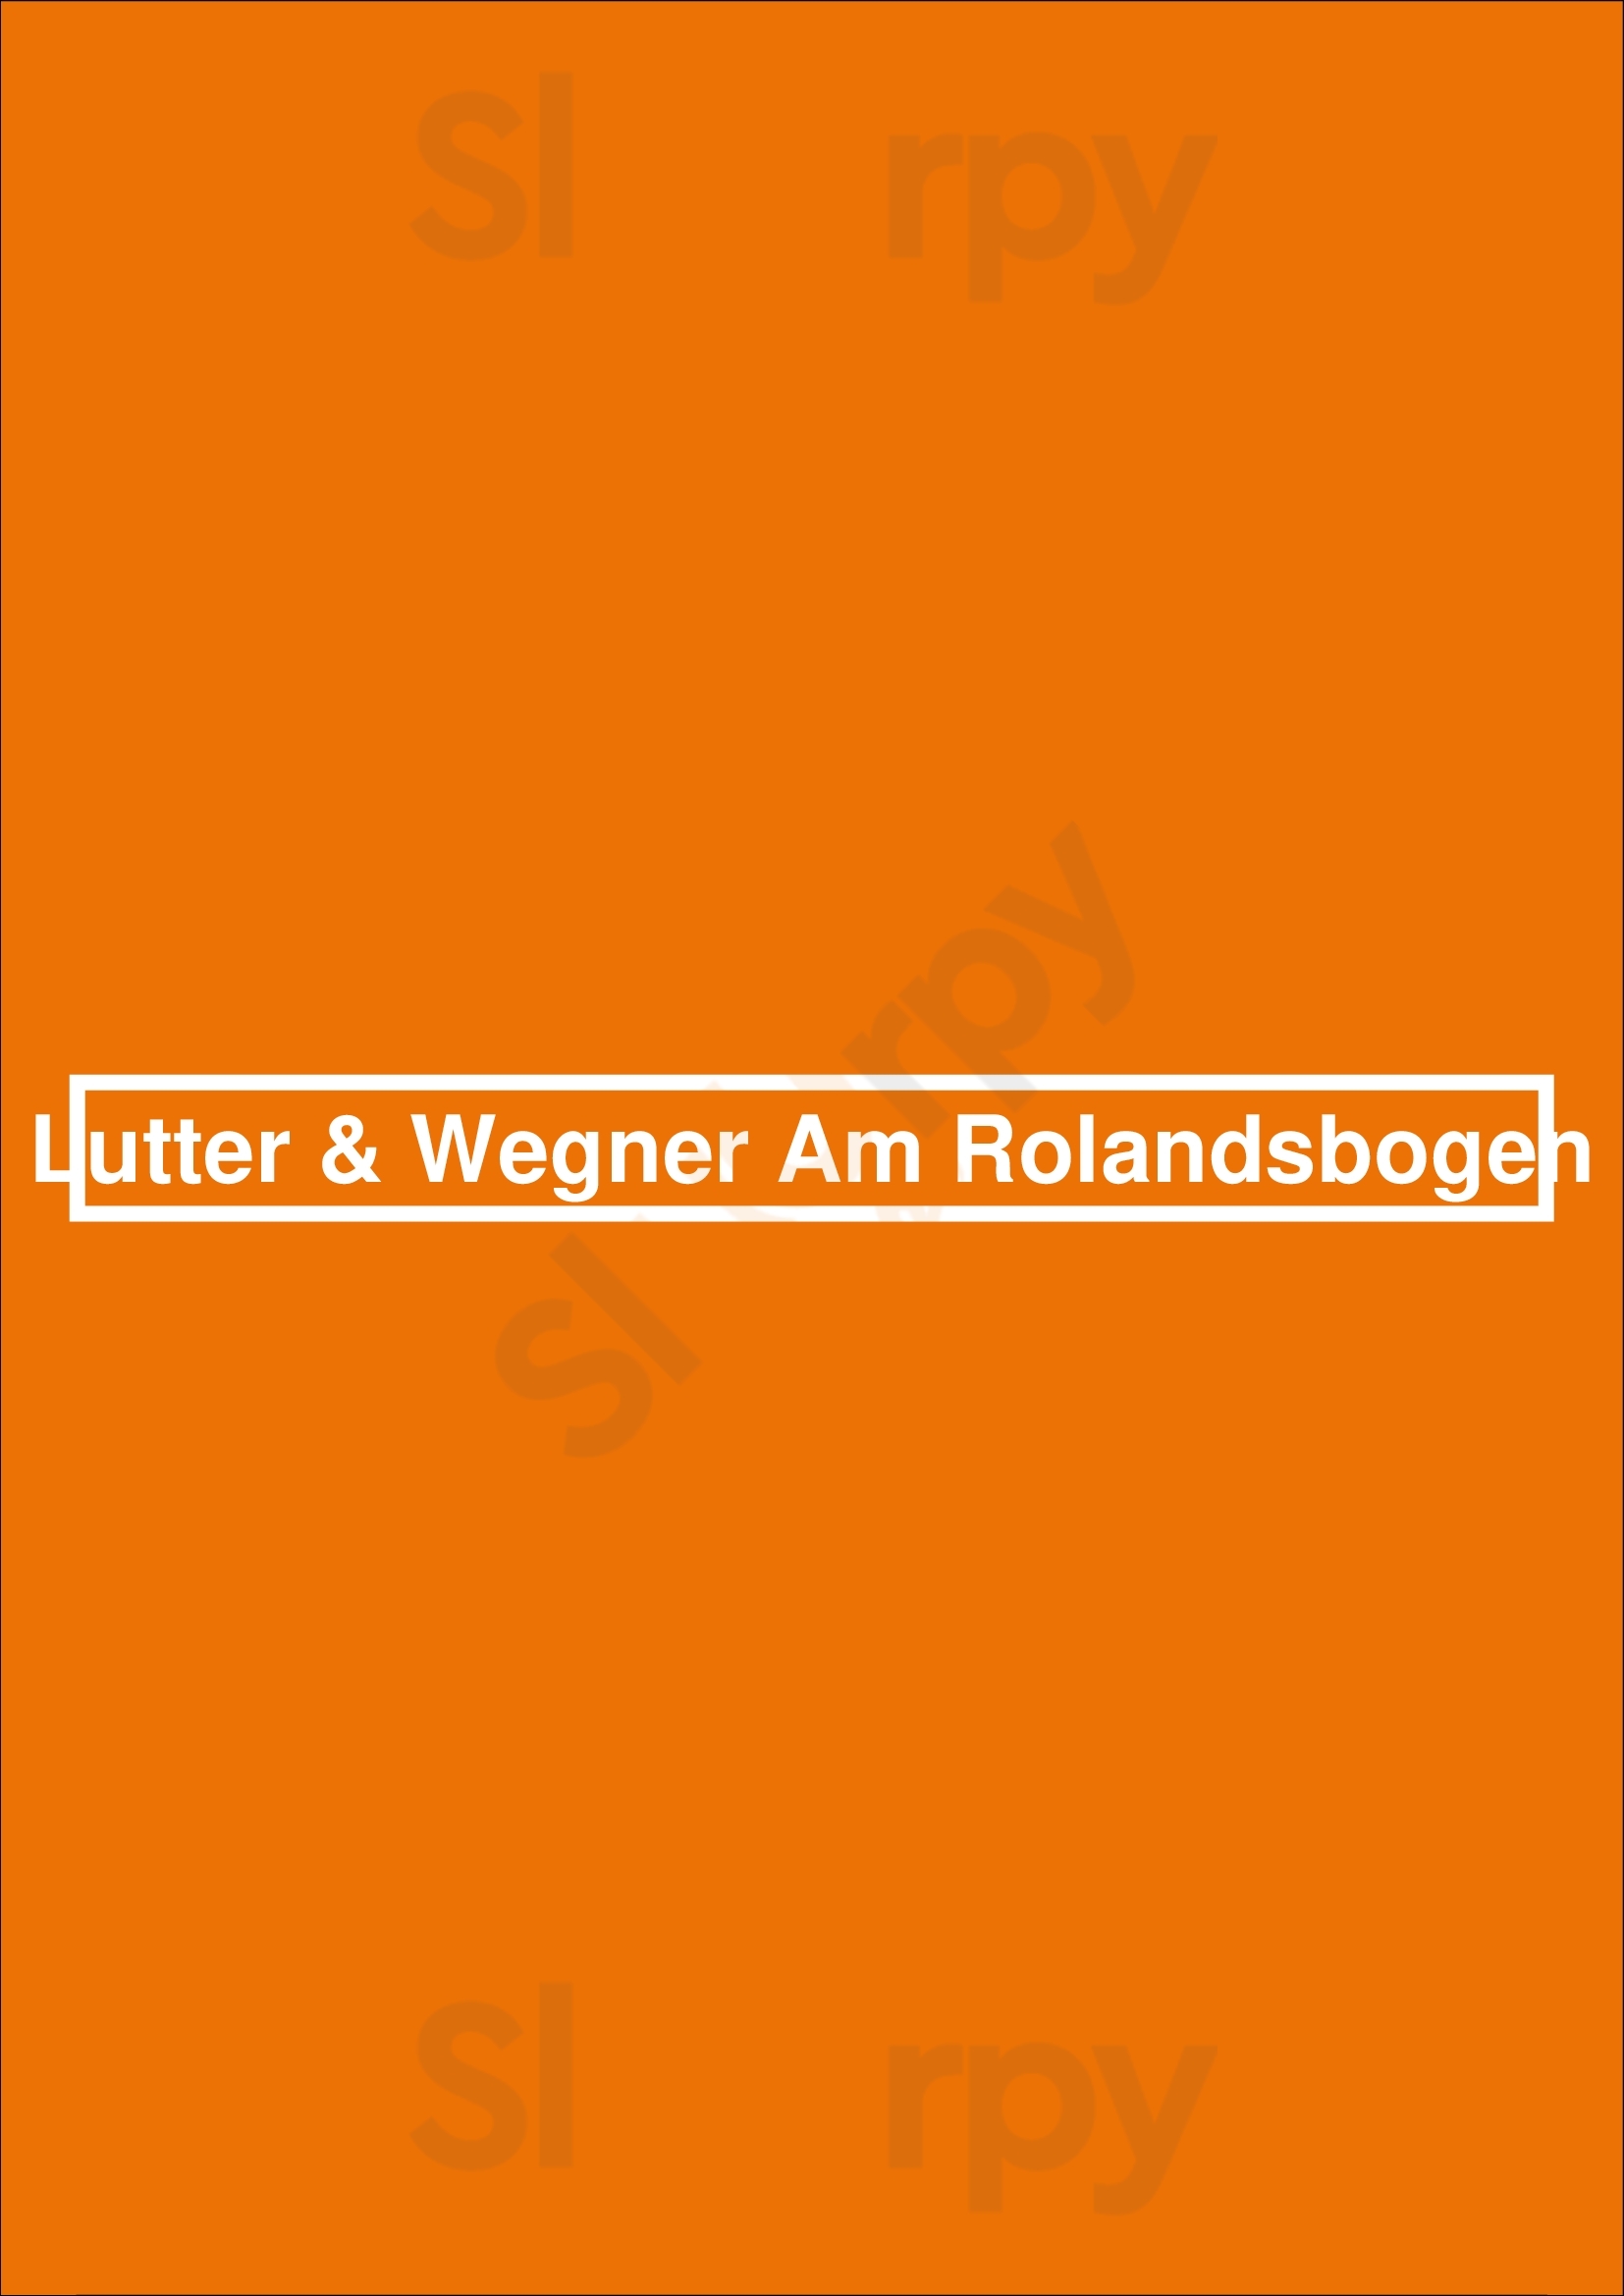 Lutter & Wegner Am Rolandsbogen Bonn Menu - 1